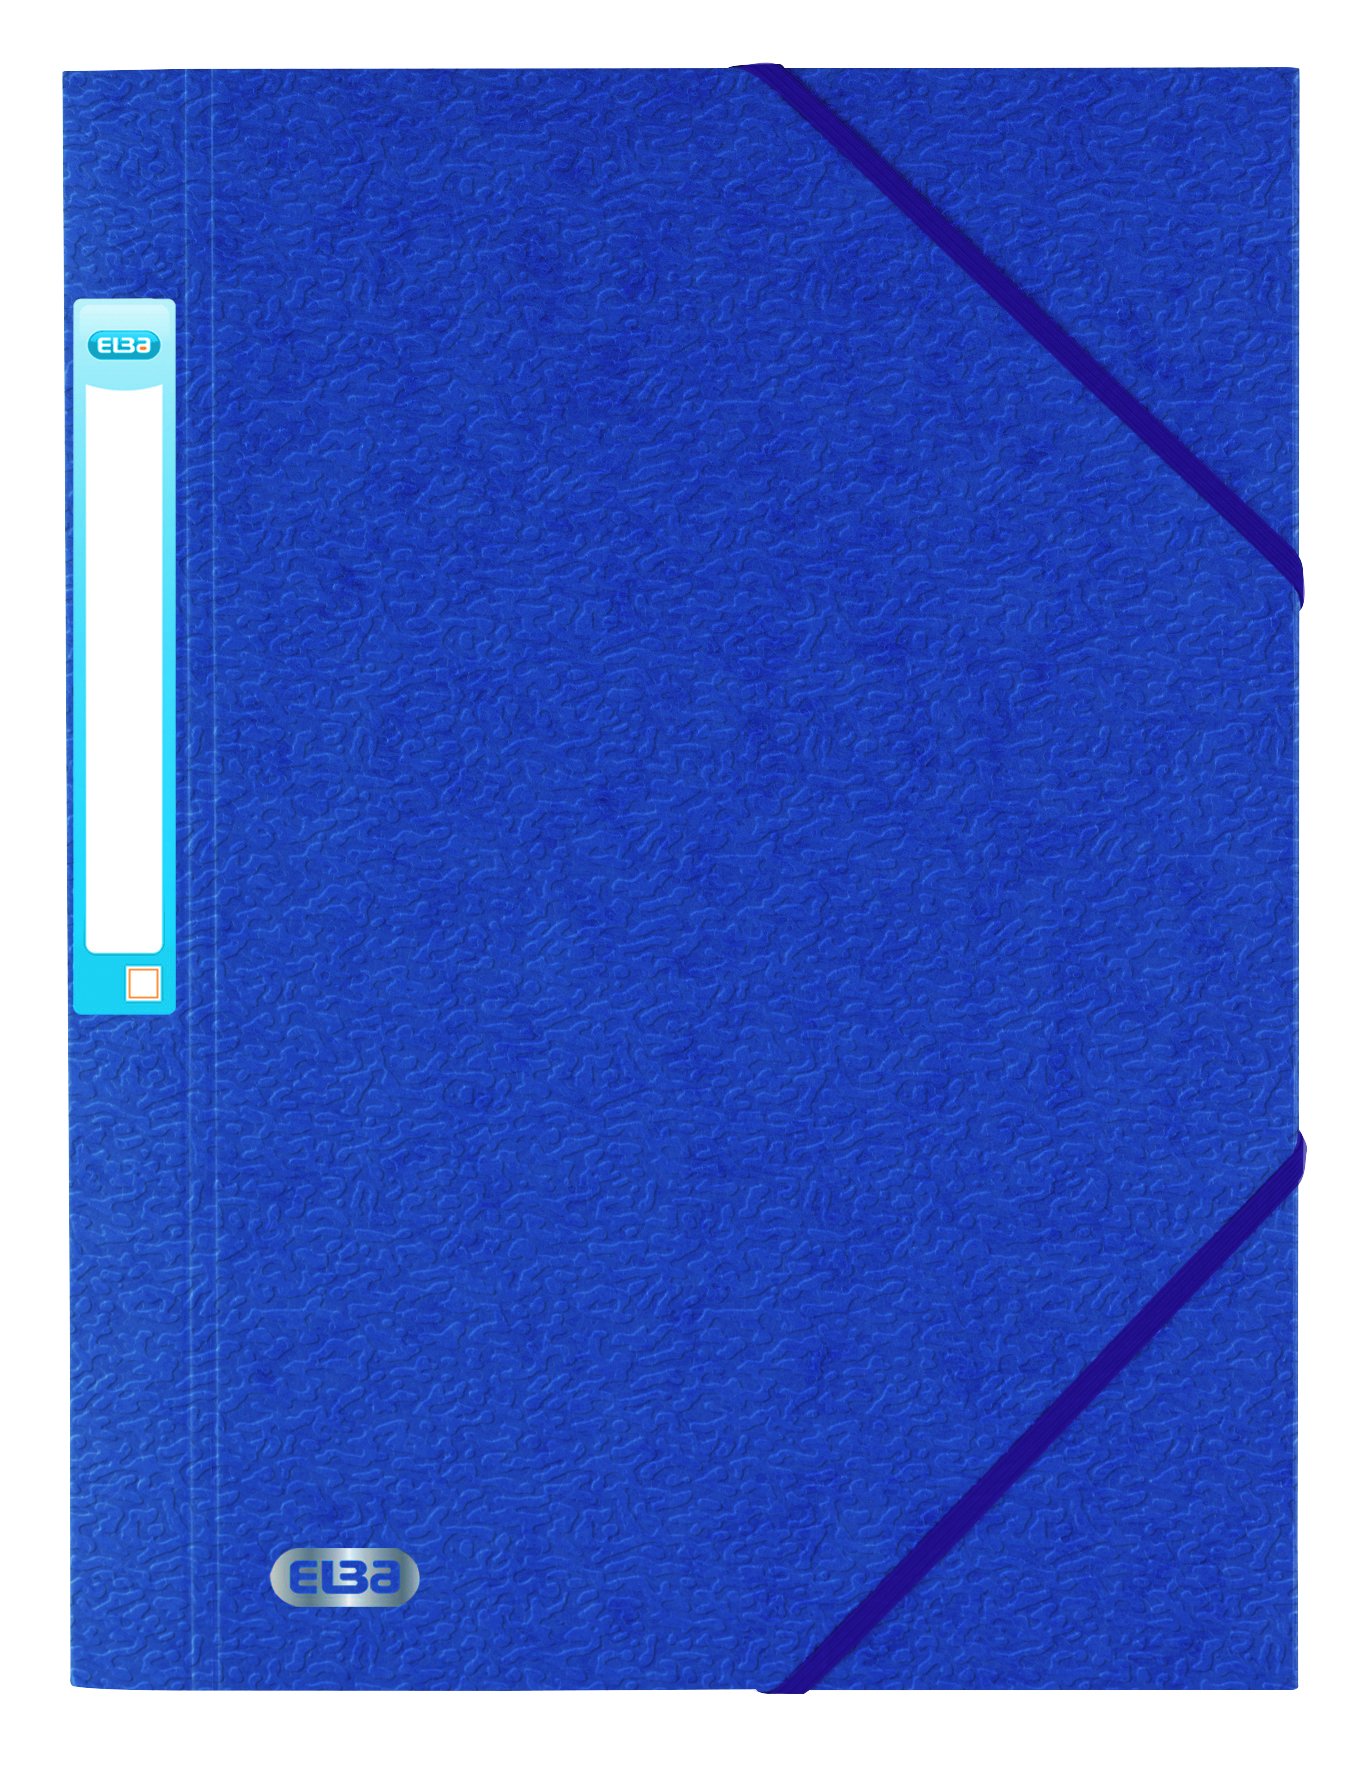 carpeta con bolsillo profundo carta azul con 6 bolsillos